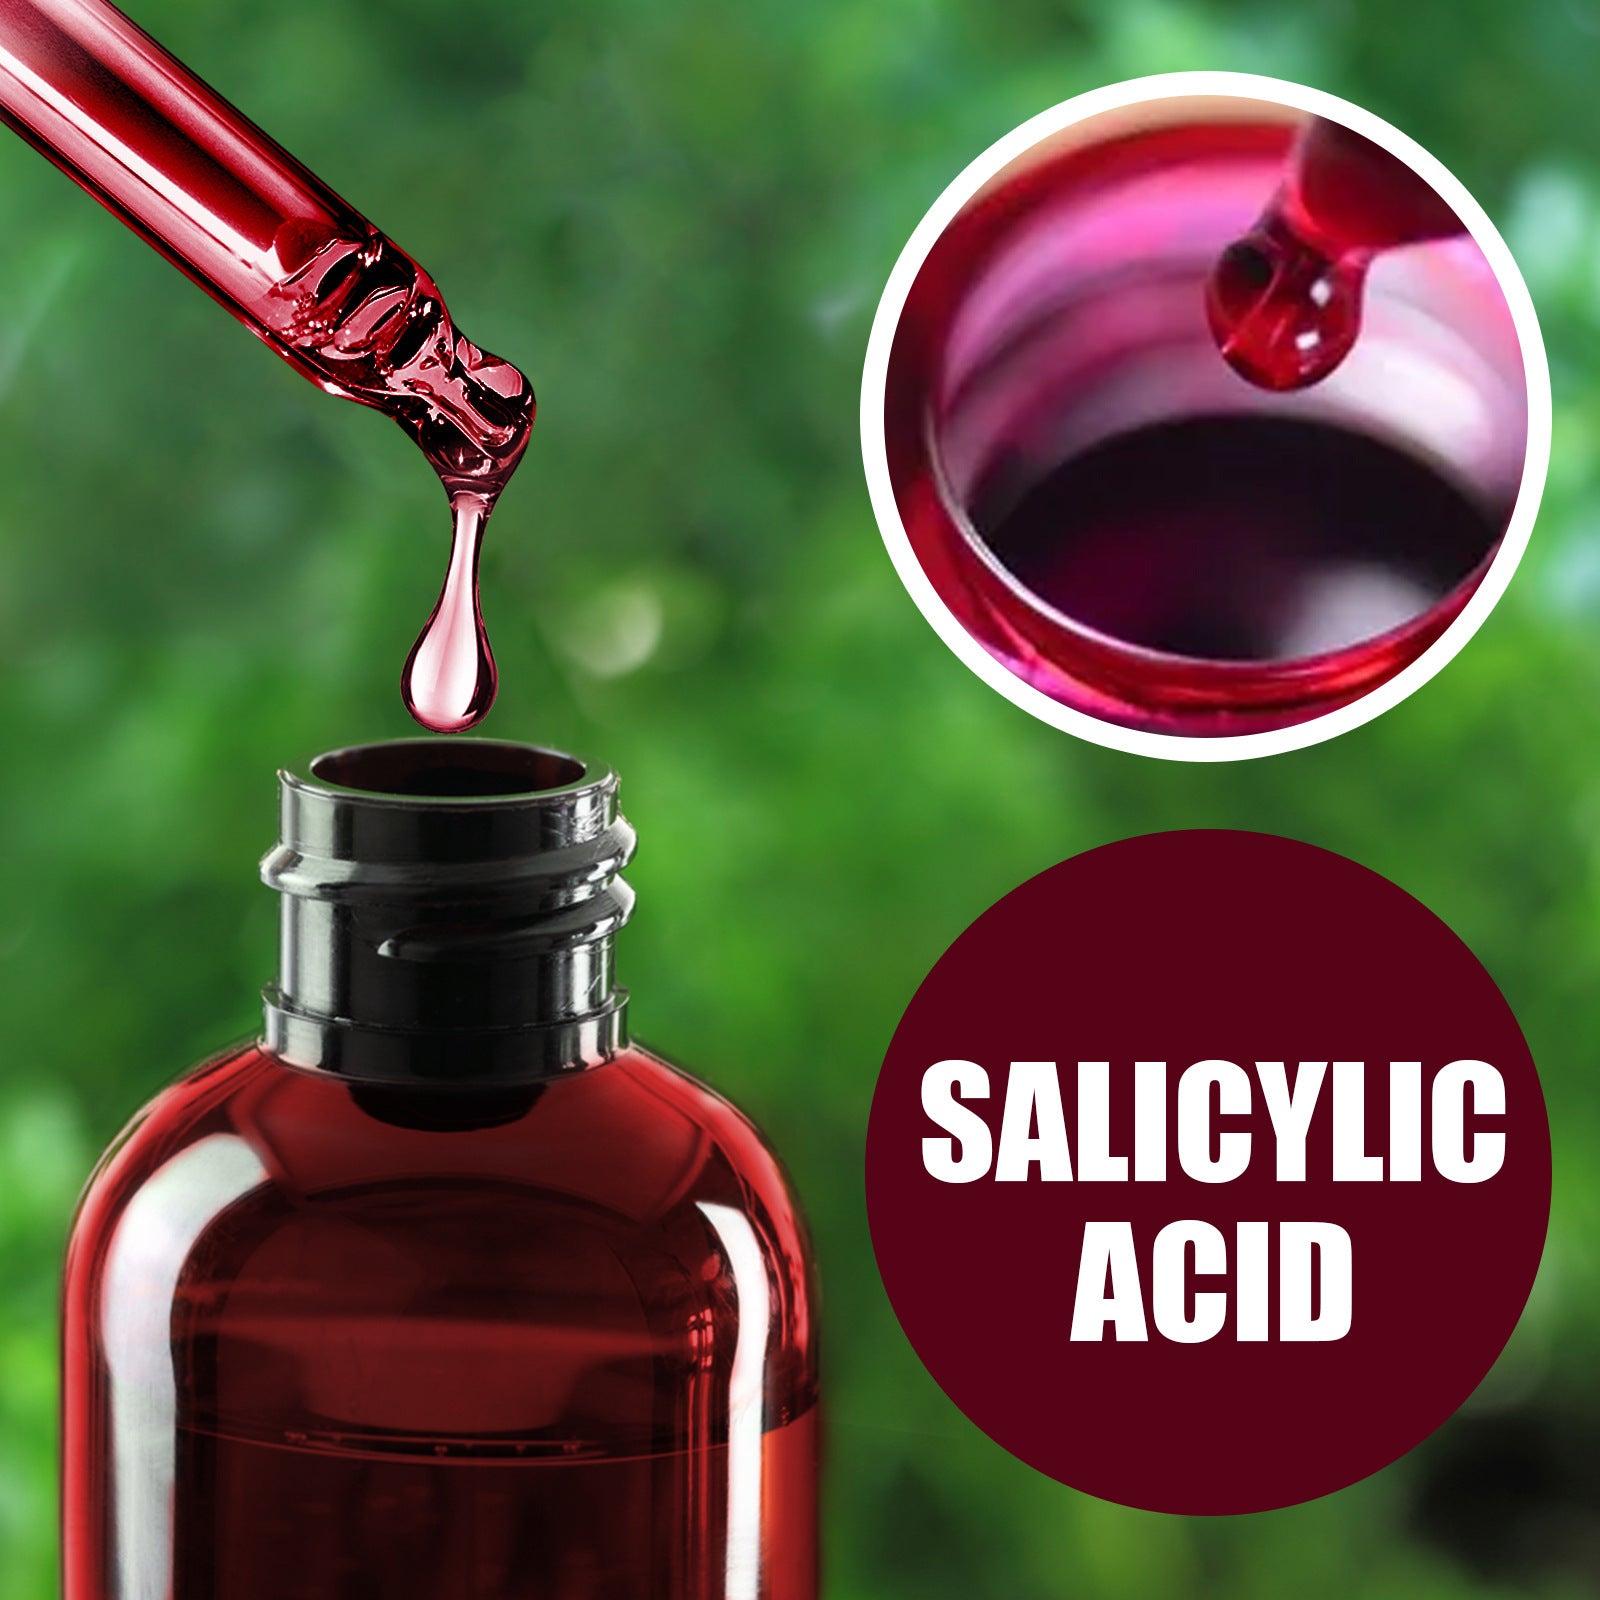 EELHOE Salicylic Acid Pore Refining Serum Moisturizing Moisturizing Gentle Care Smoothing EELHOE Salicylic Acid Serum Pore Refining Serum Retinoid 2%